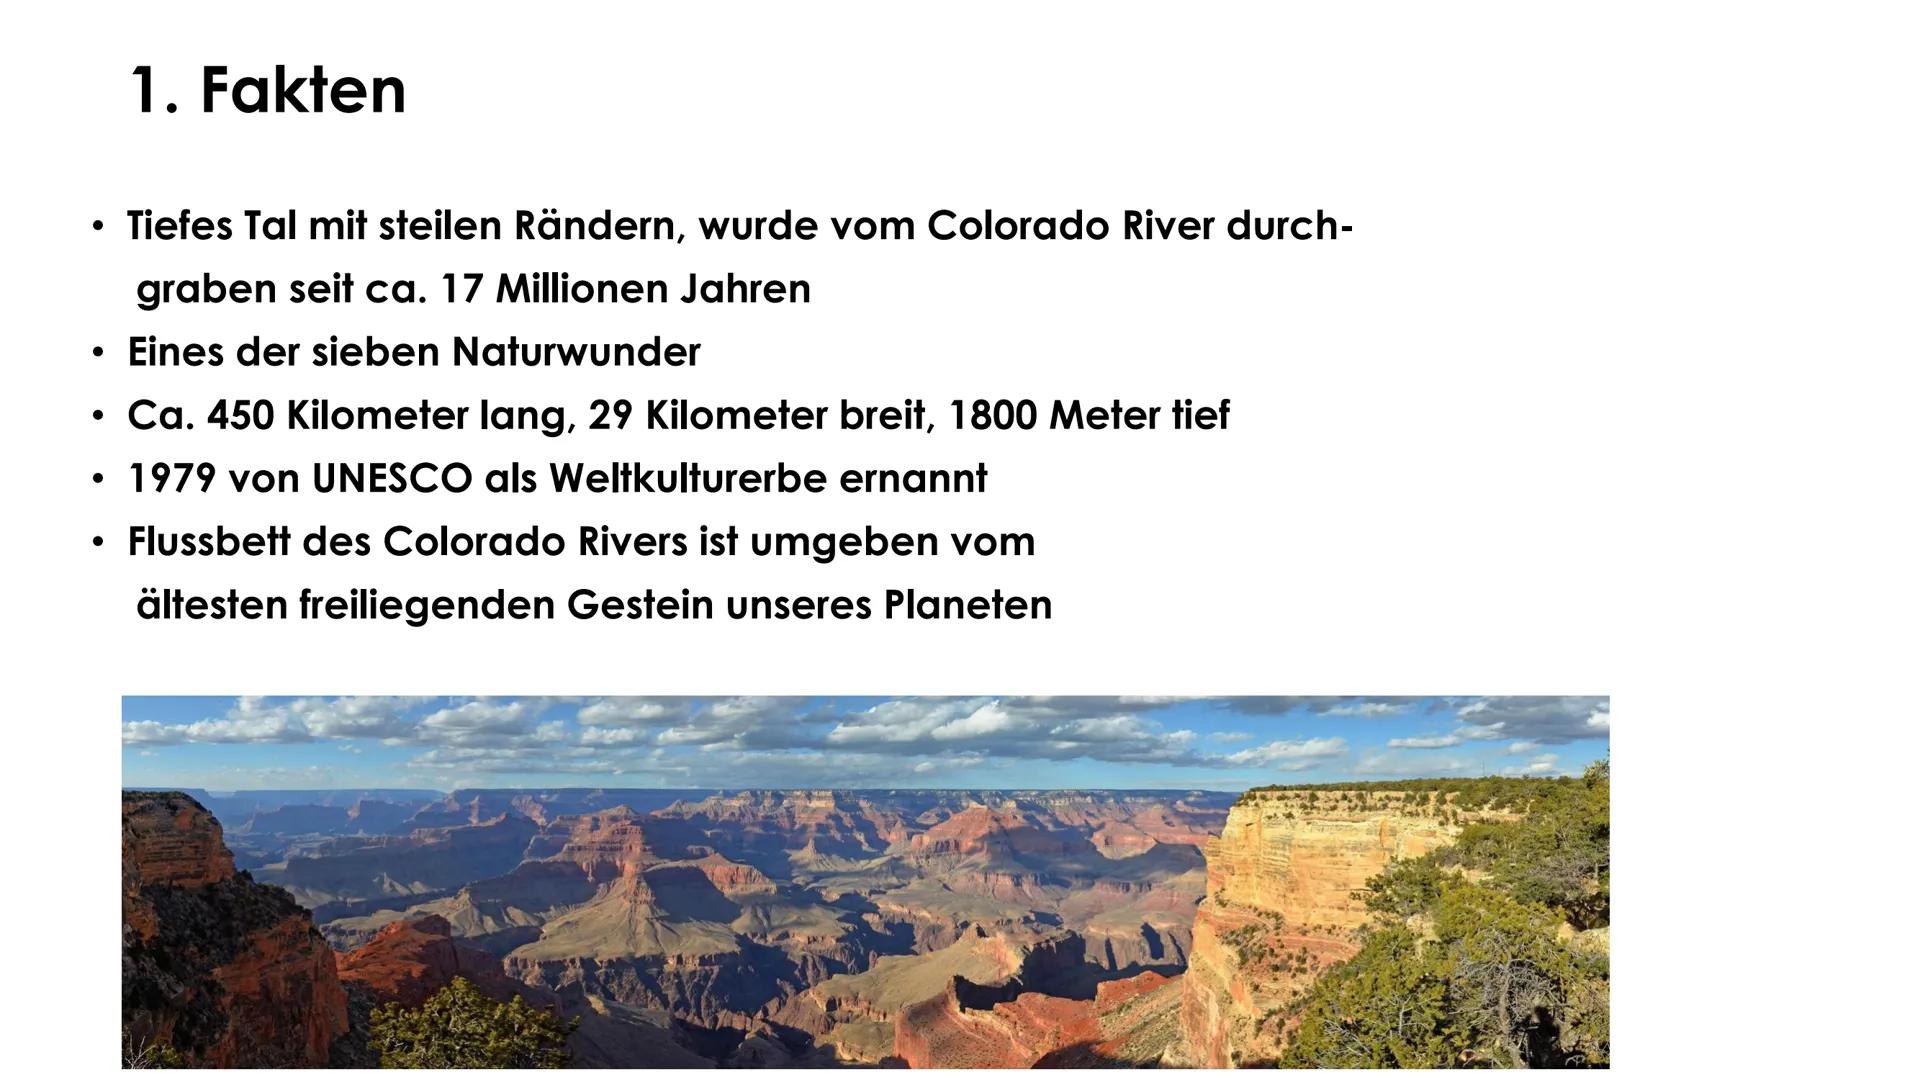 Grand Canyon
TEKET
Erdkunde GFS Marie-Sophie Pfeffer Gliederung
1. Allgemeine Informationen
- Lage
Fakten
2. Entstehung
- Verschiedene Geste